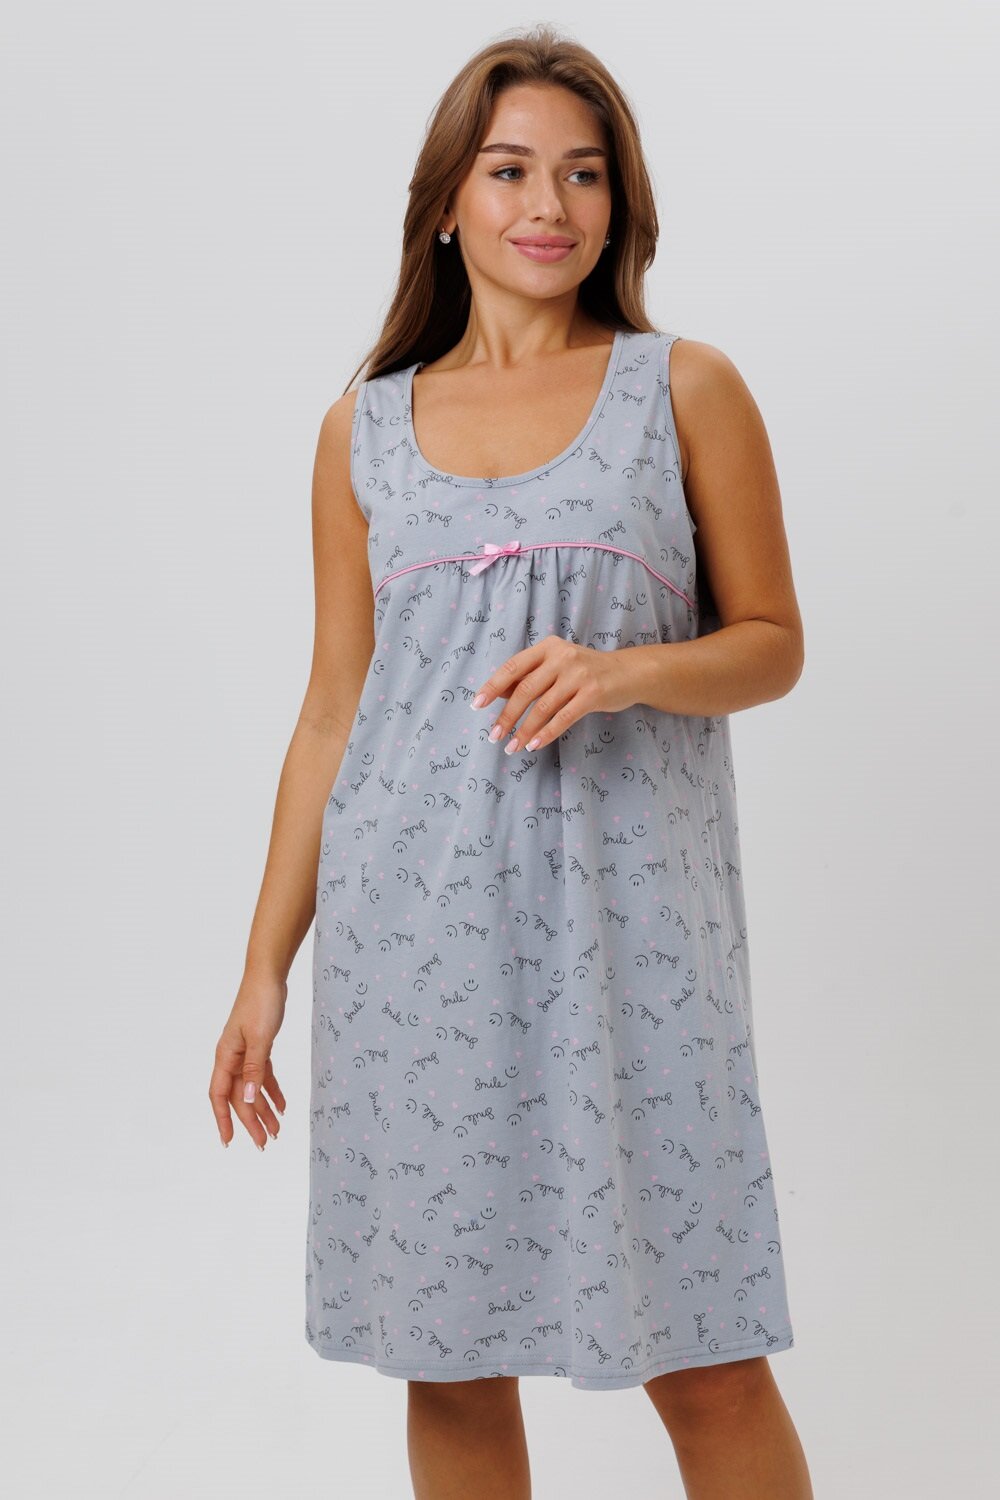 Сорочка женская ночная Modellini 1629/2 цвет серый, размер 56 - фотография № 8